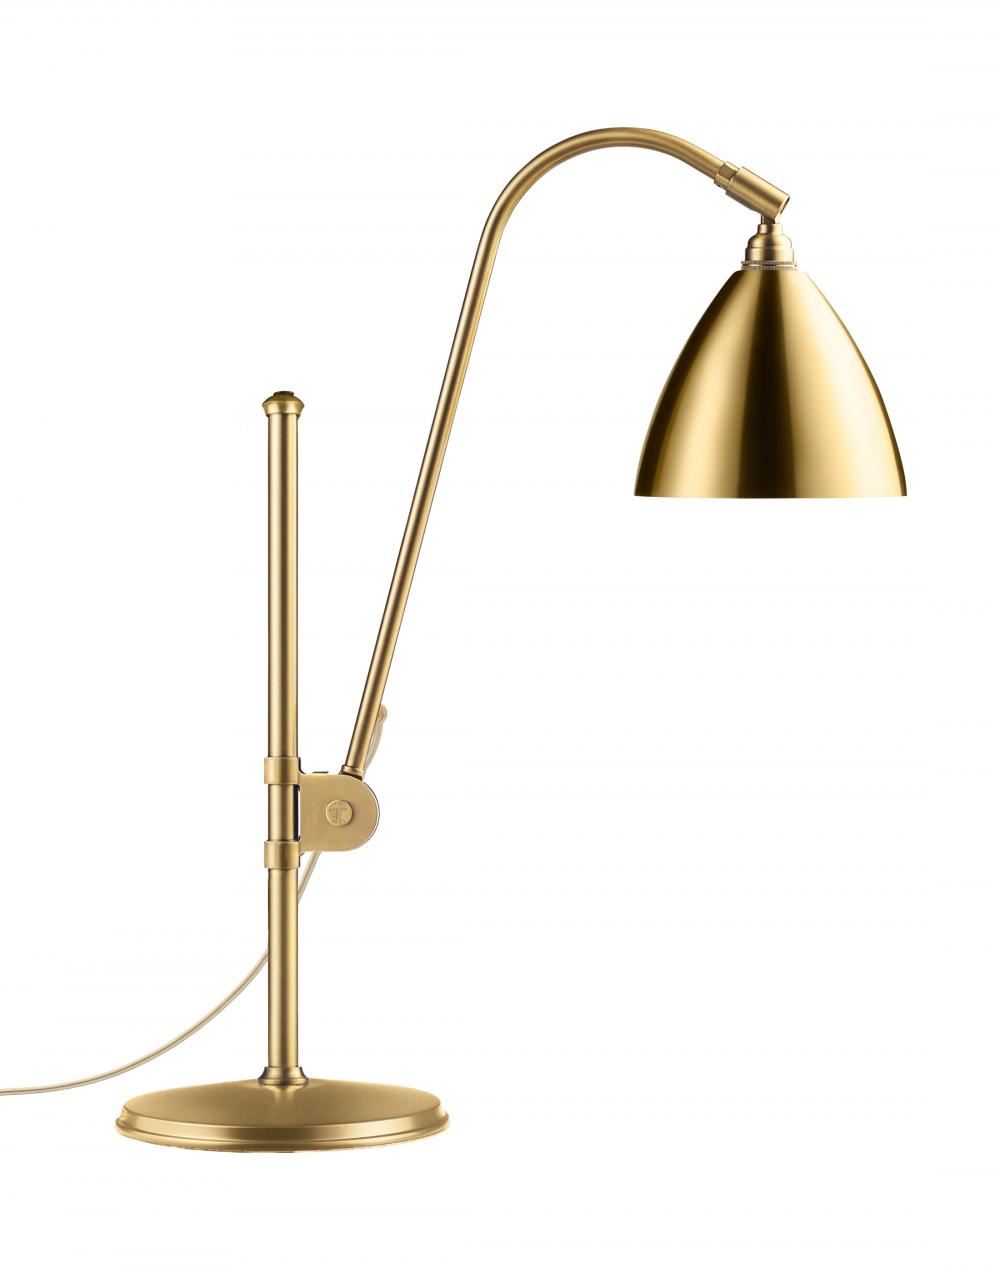 Bestlite Bl1 Table Lamp All Brass